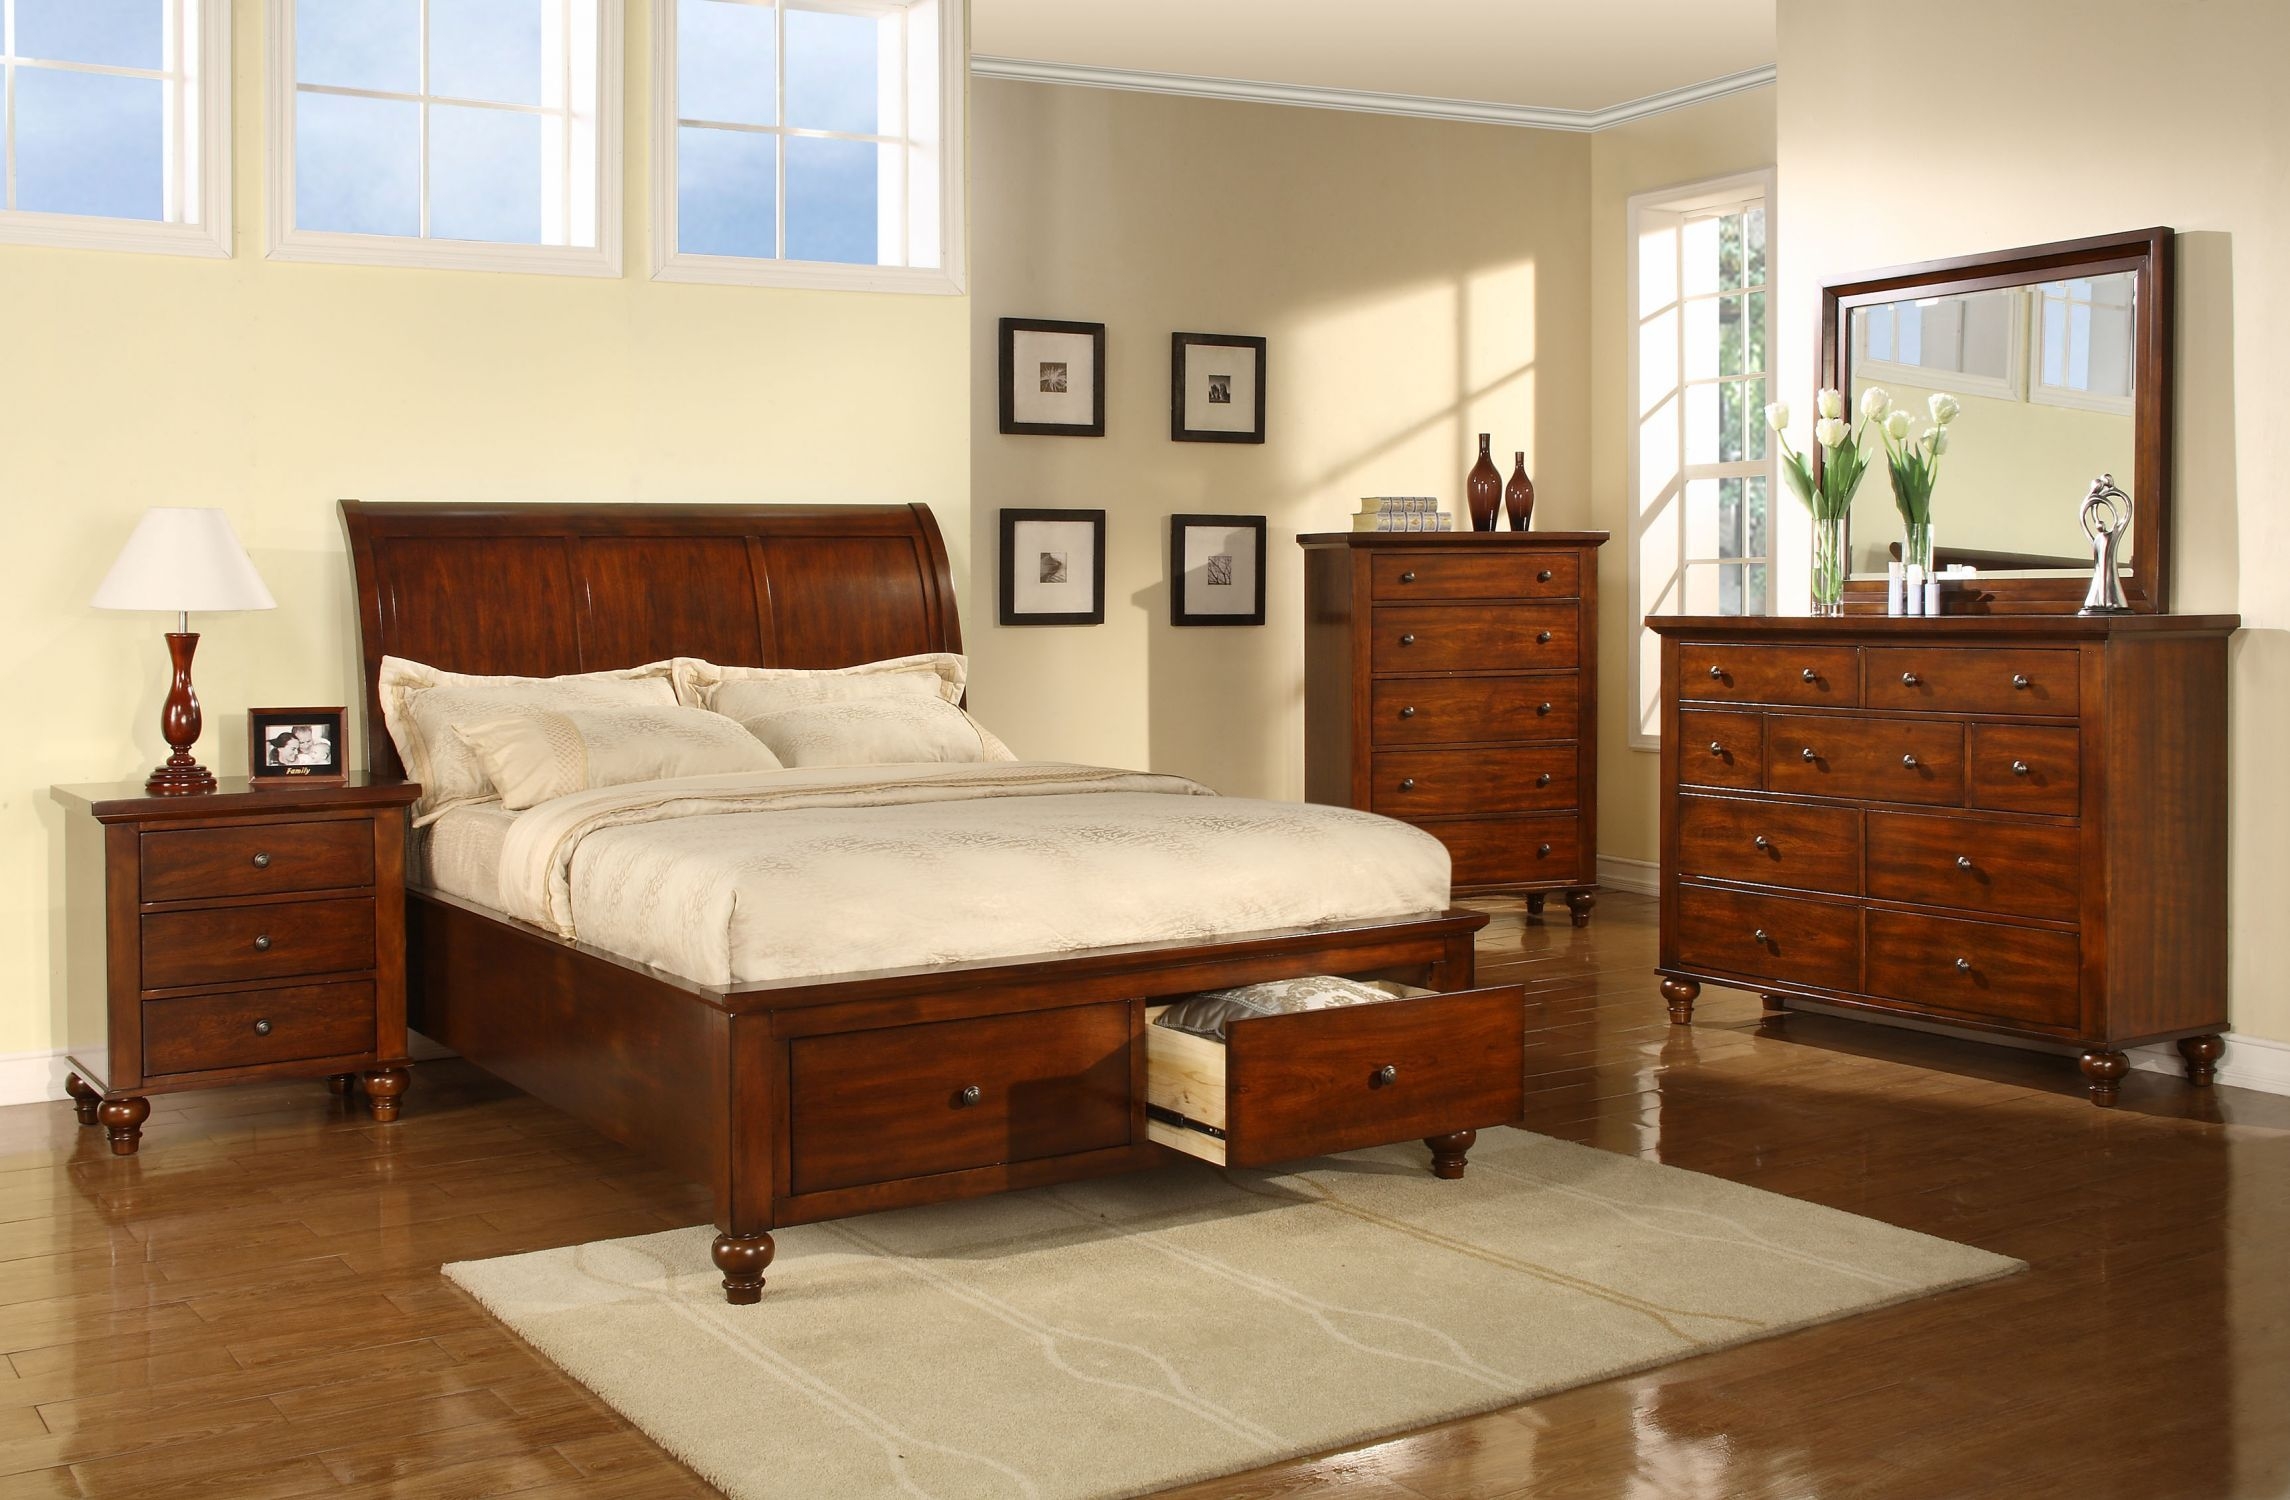 rosewood bedroom furniture dubai